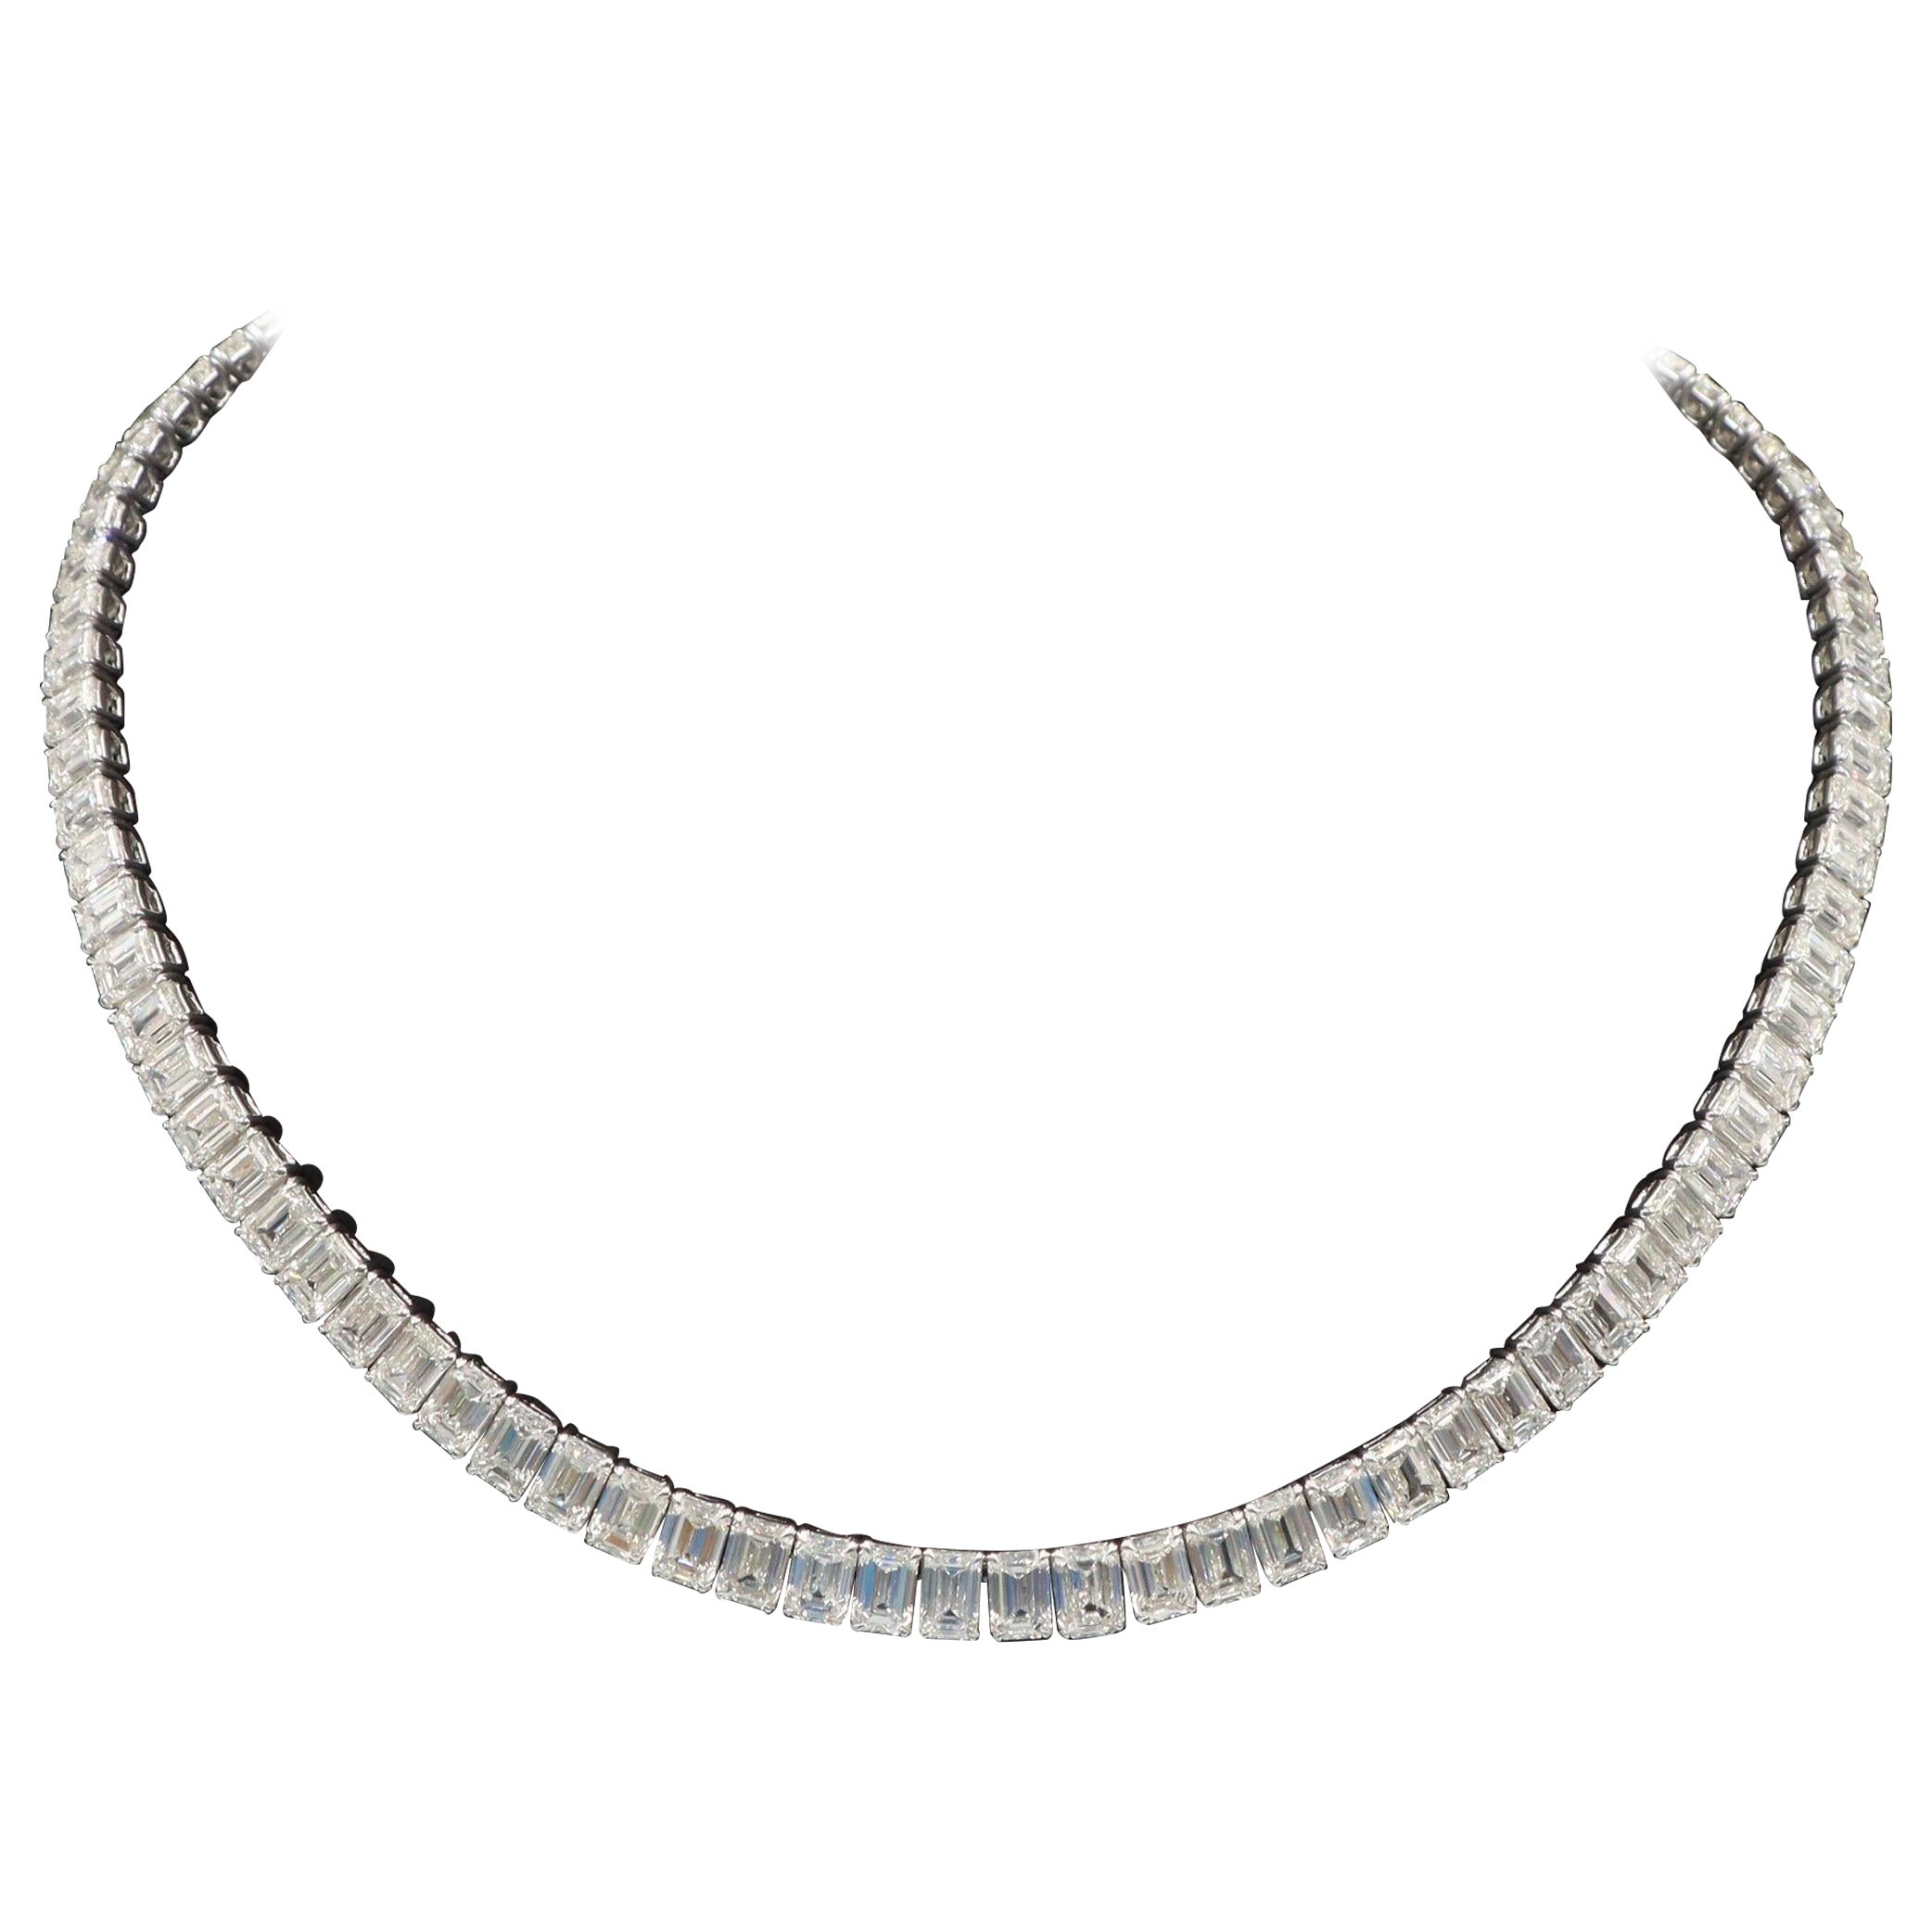 Emilio Jewelry, collier de diamants taille émeraude certifiés GIA de 55,00 carats